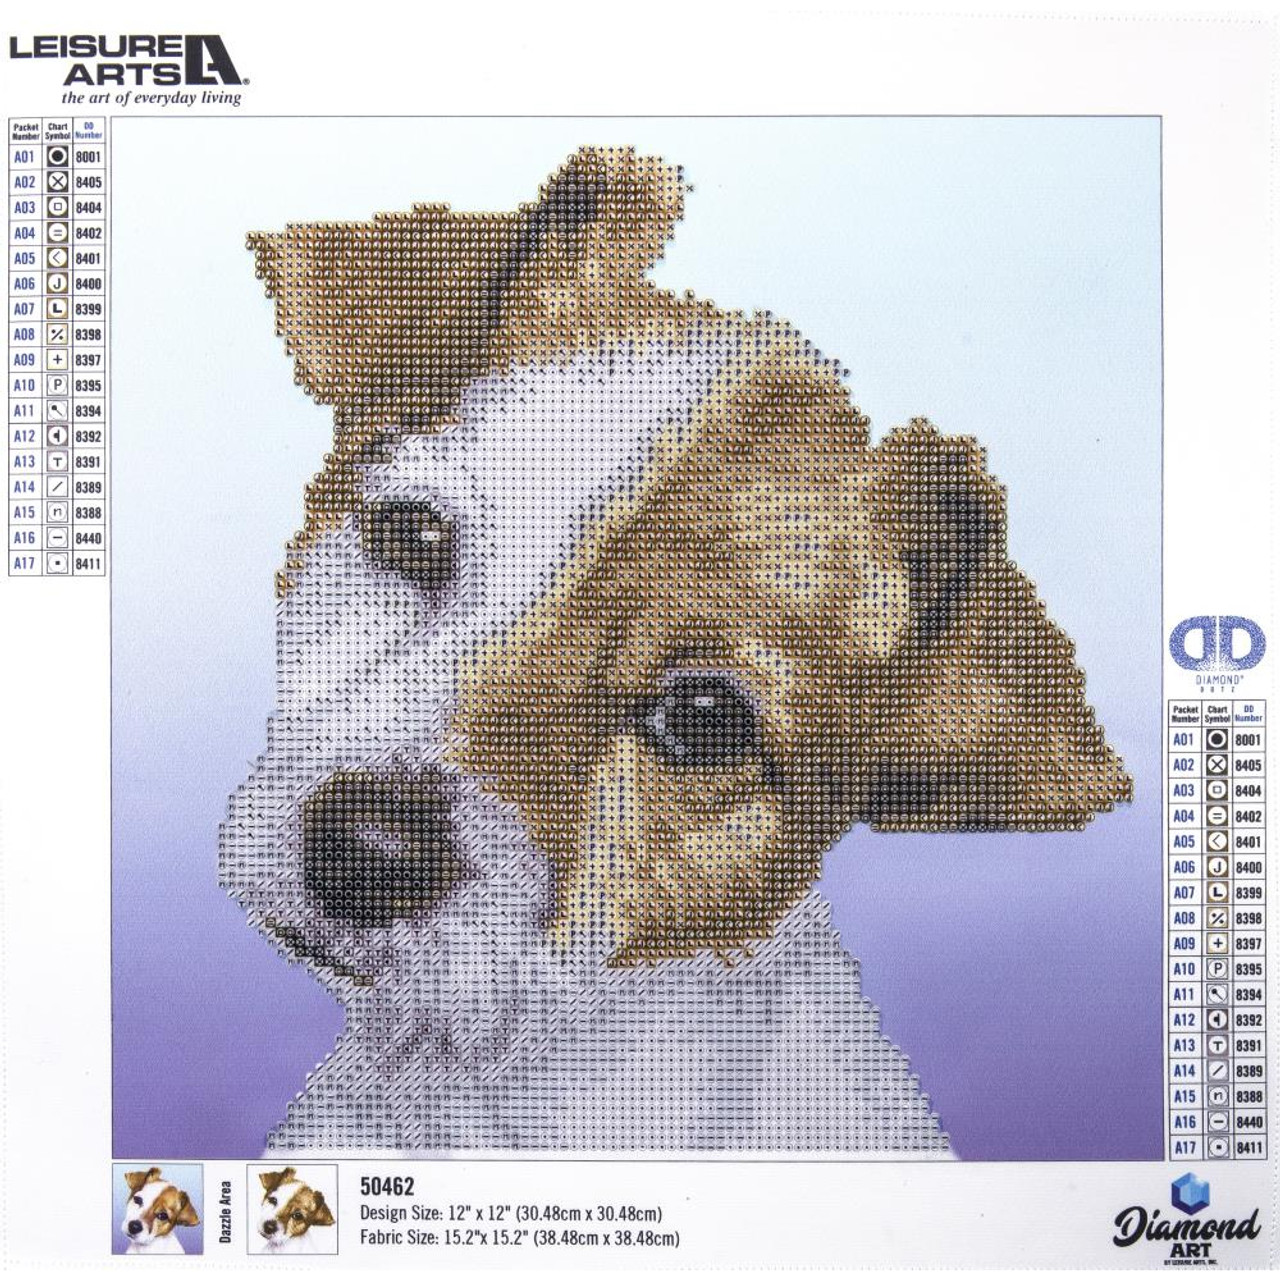 Leisure Arts Puppy Diamond Art Intermediate Kit